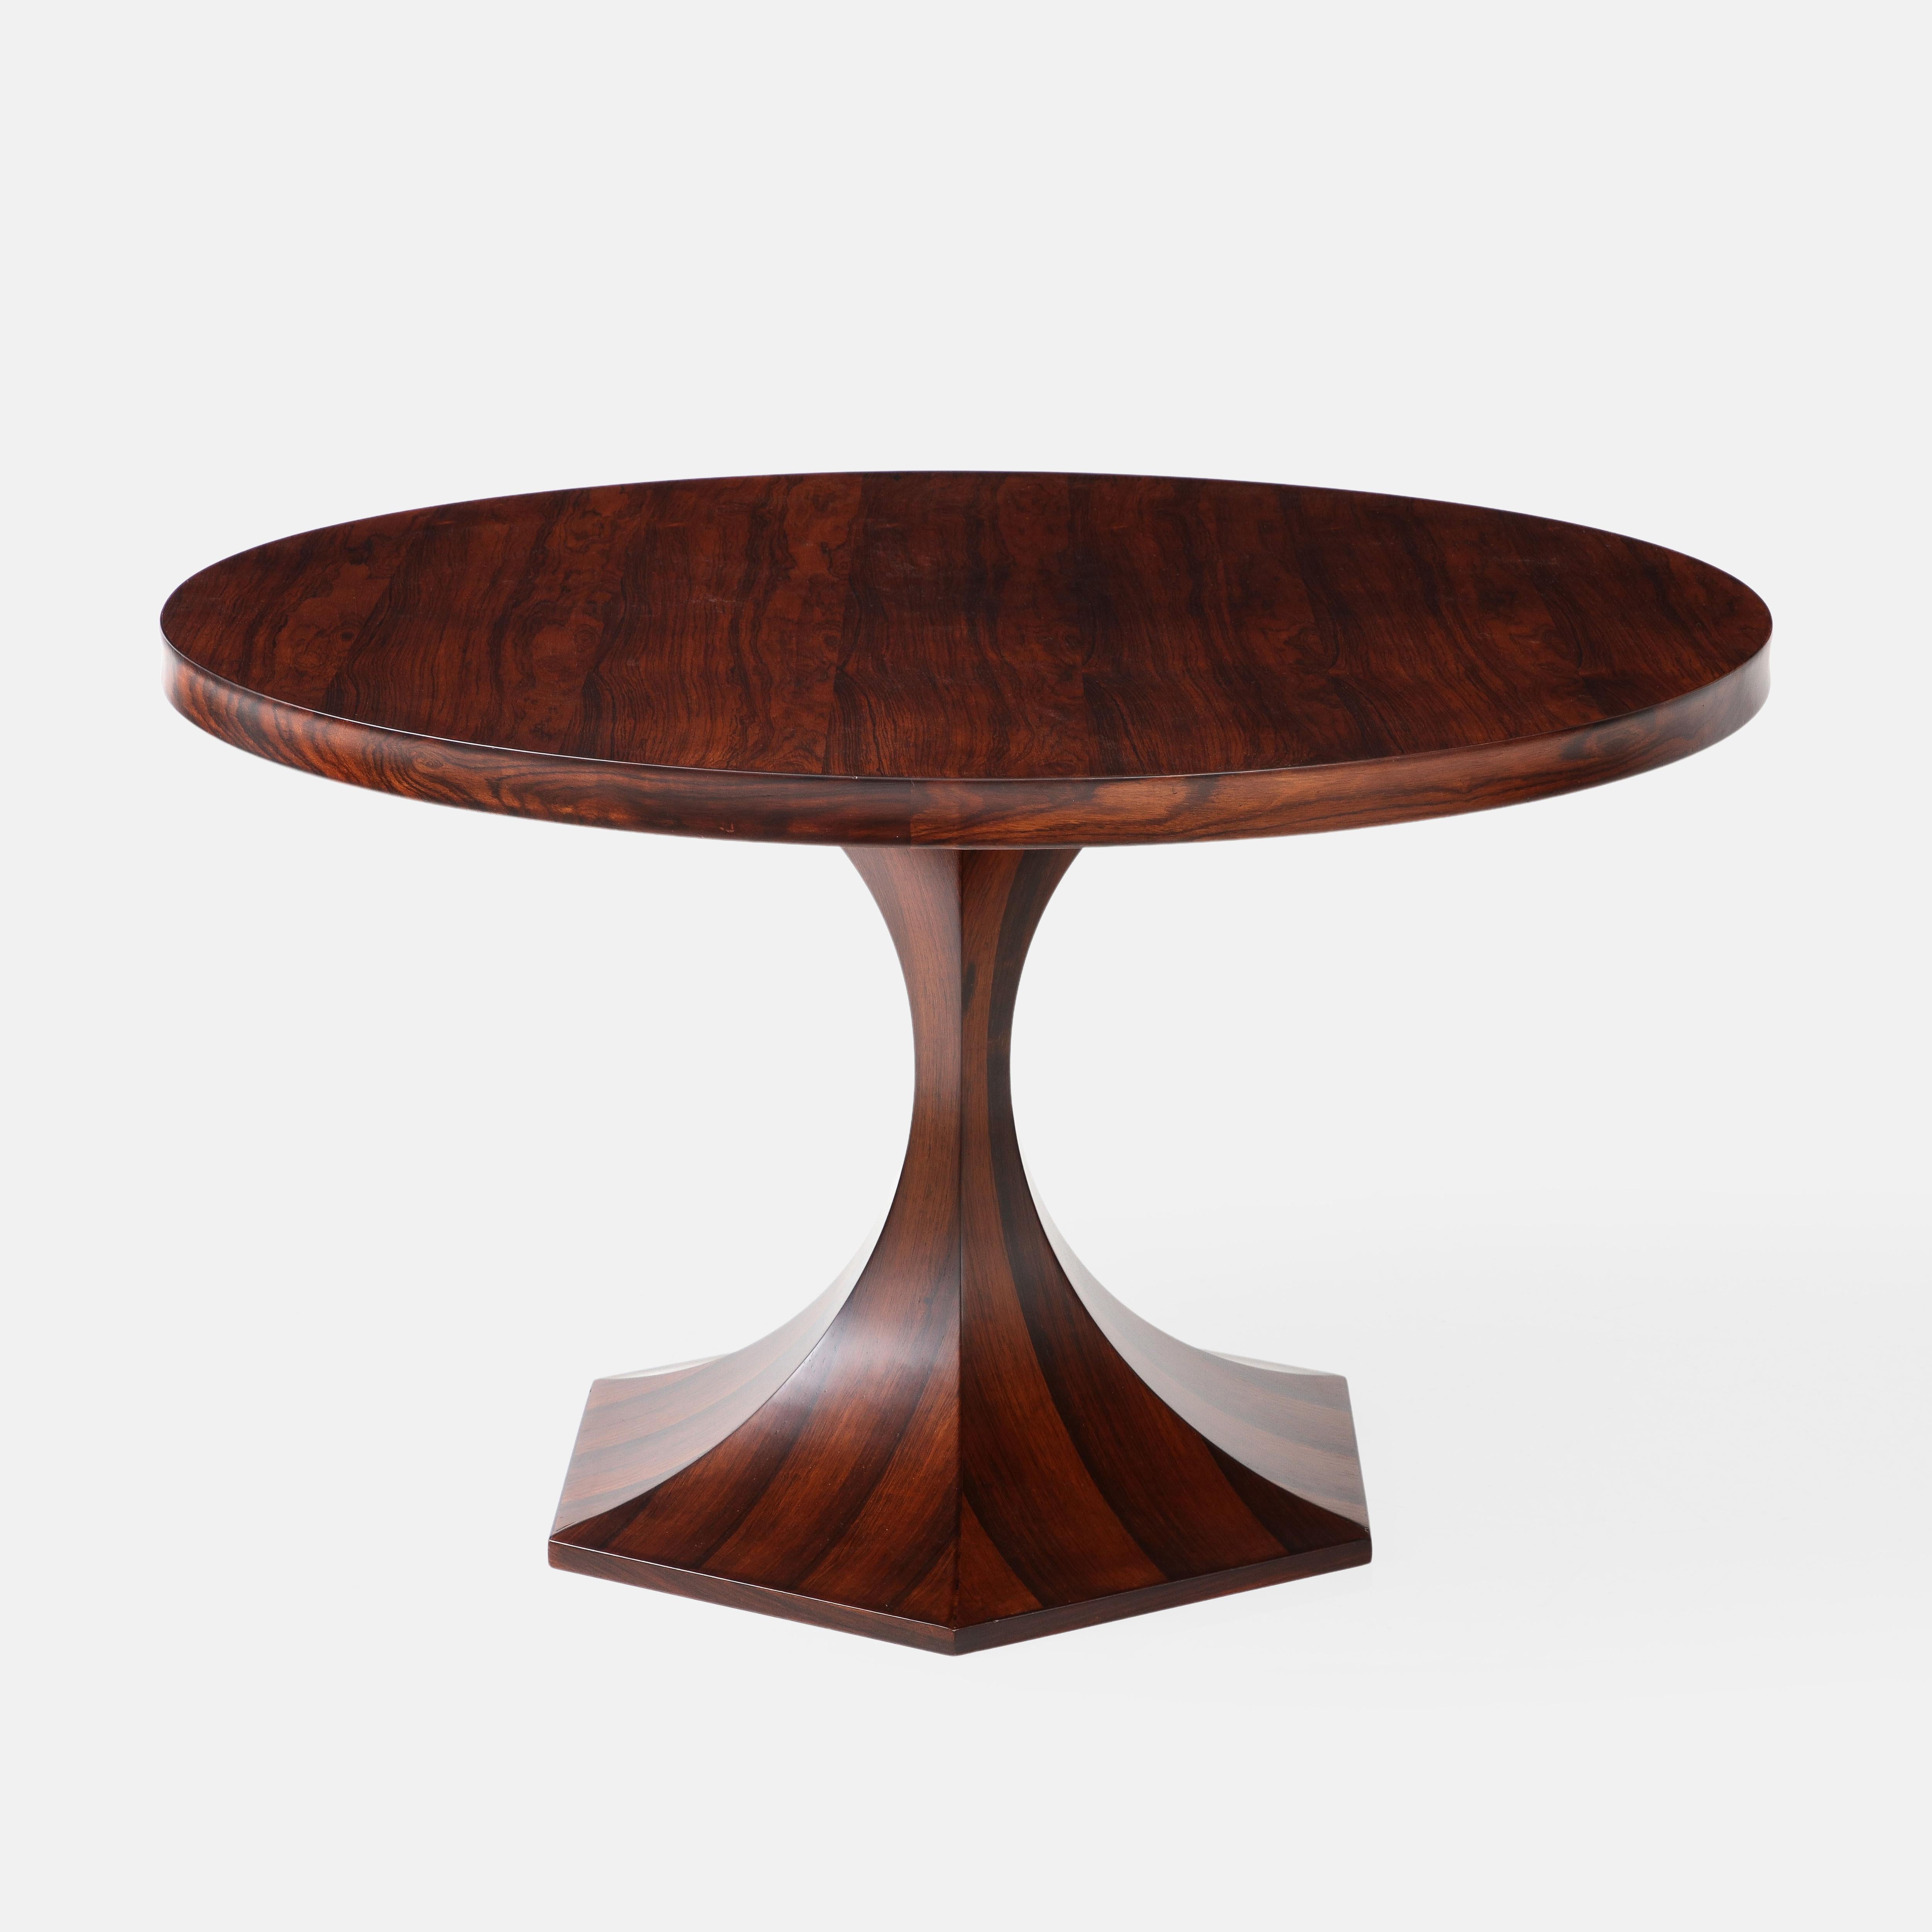 Giulio Moscatelli für Meroni runder Mittel- oder Esstisch aus seltenem Palisanderholz mit sechseckiger Basis, Italien, um 1964. Dieses exquisite Tischdesign aus der Mitte des Jahrhunderts ist zwar einfach in der Form, aber mit der starken